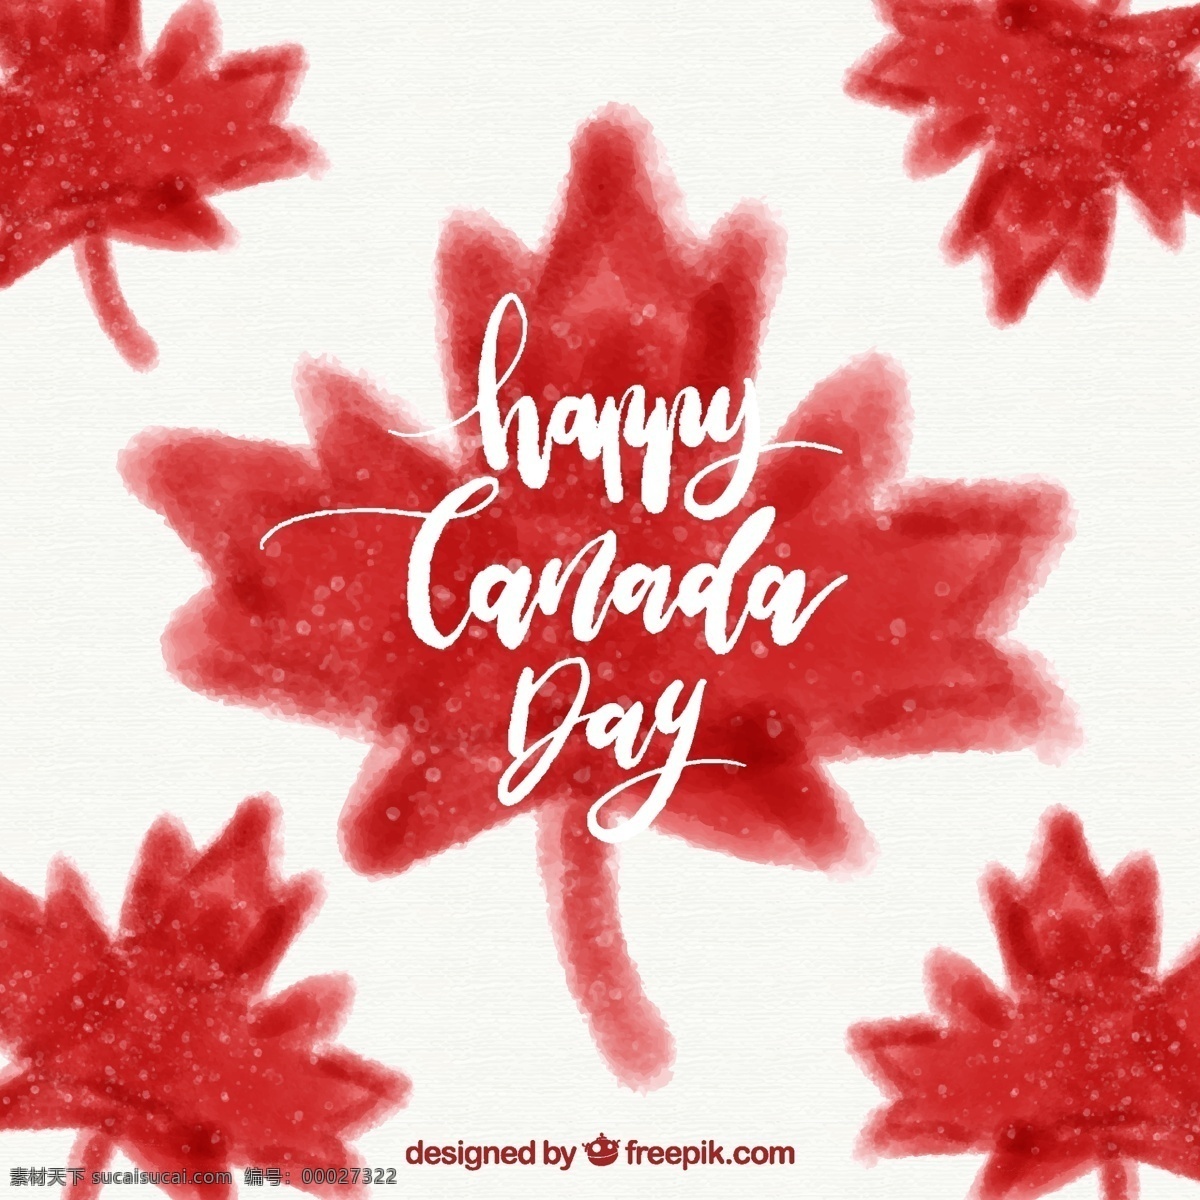 加拿大 日 背景 水彩 树叶 水彩背景 庆祝 节日 事件 文化 自由 国家 独立日 爱国 独立 民族